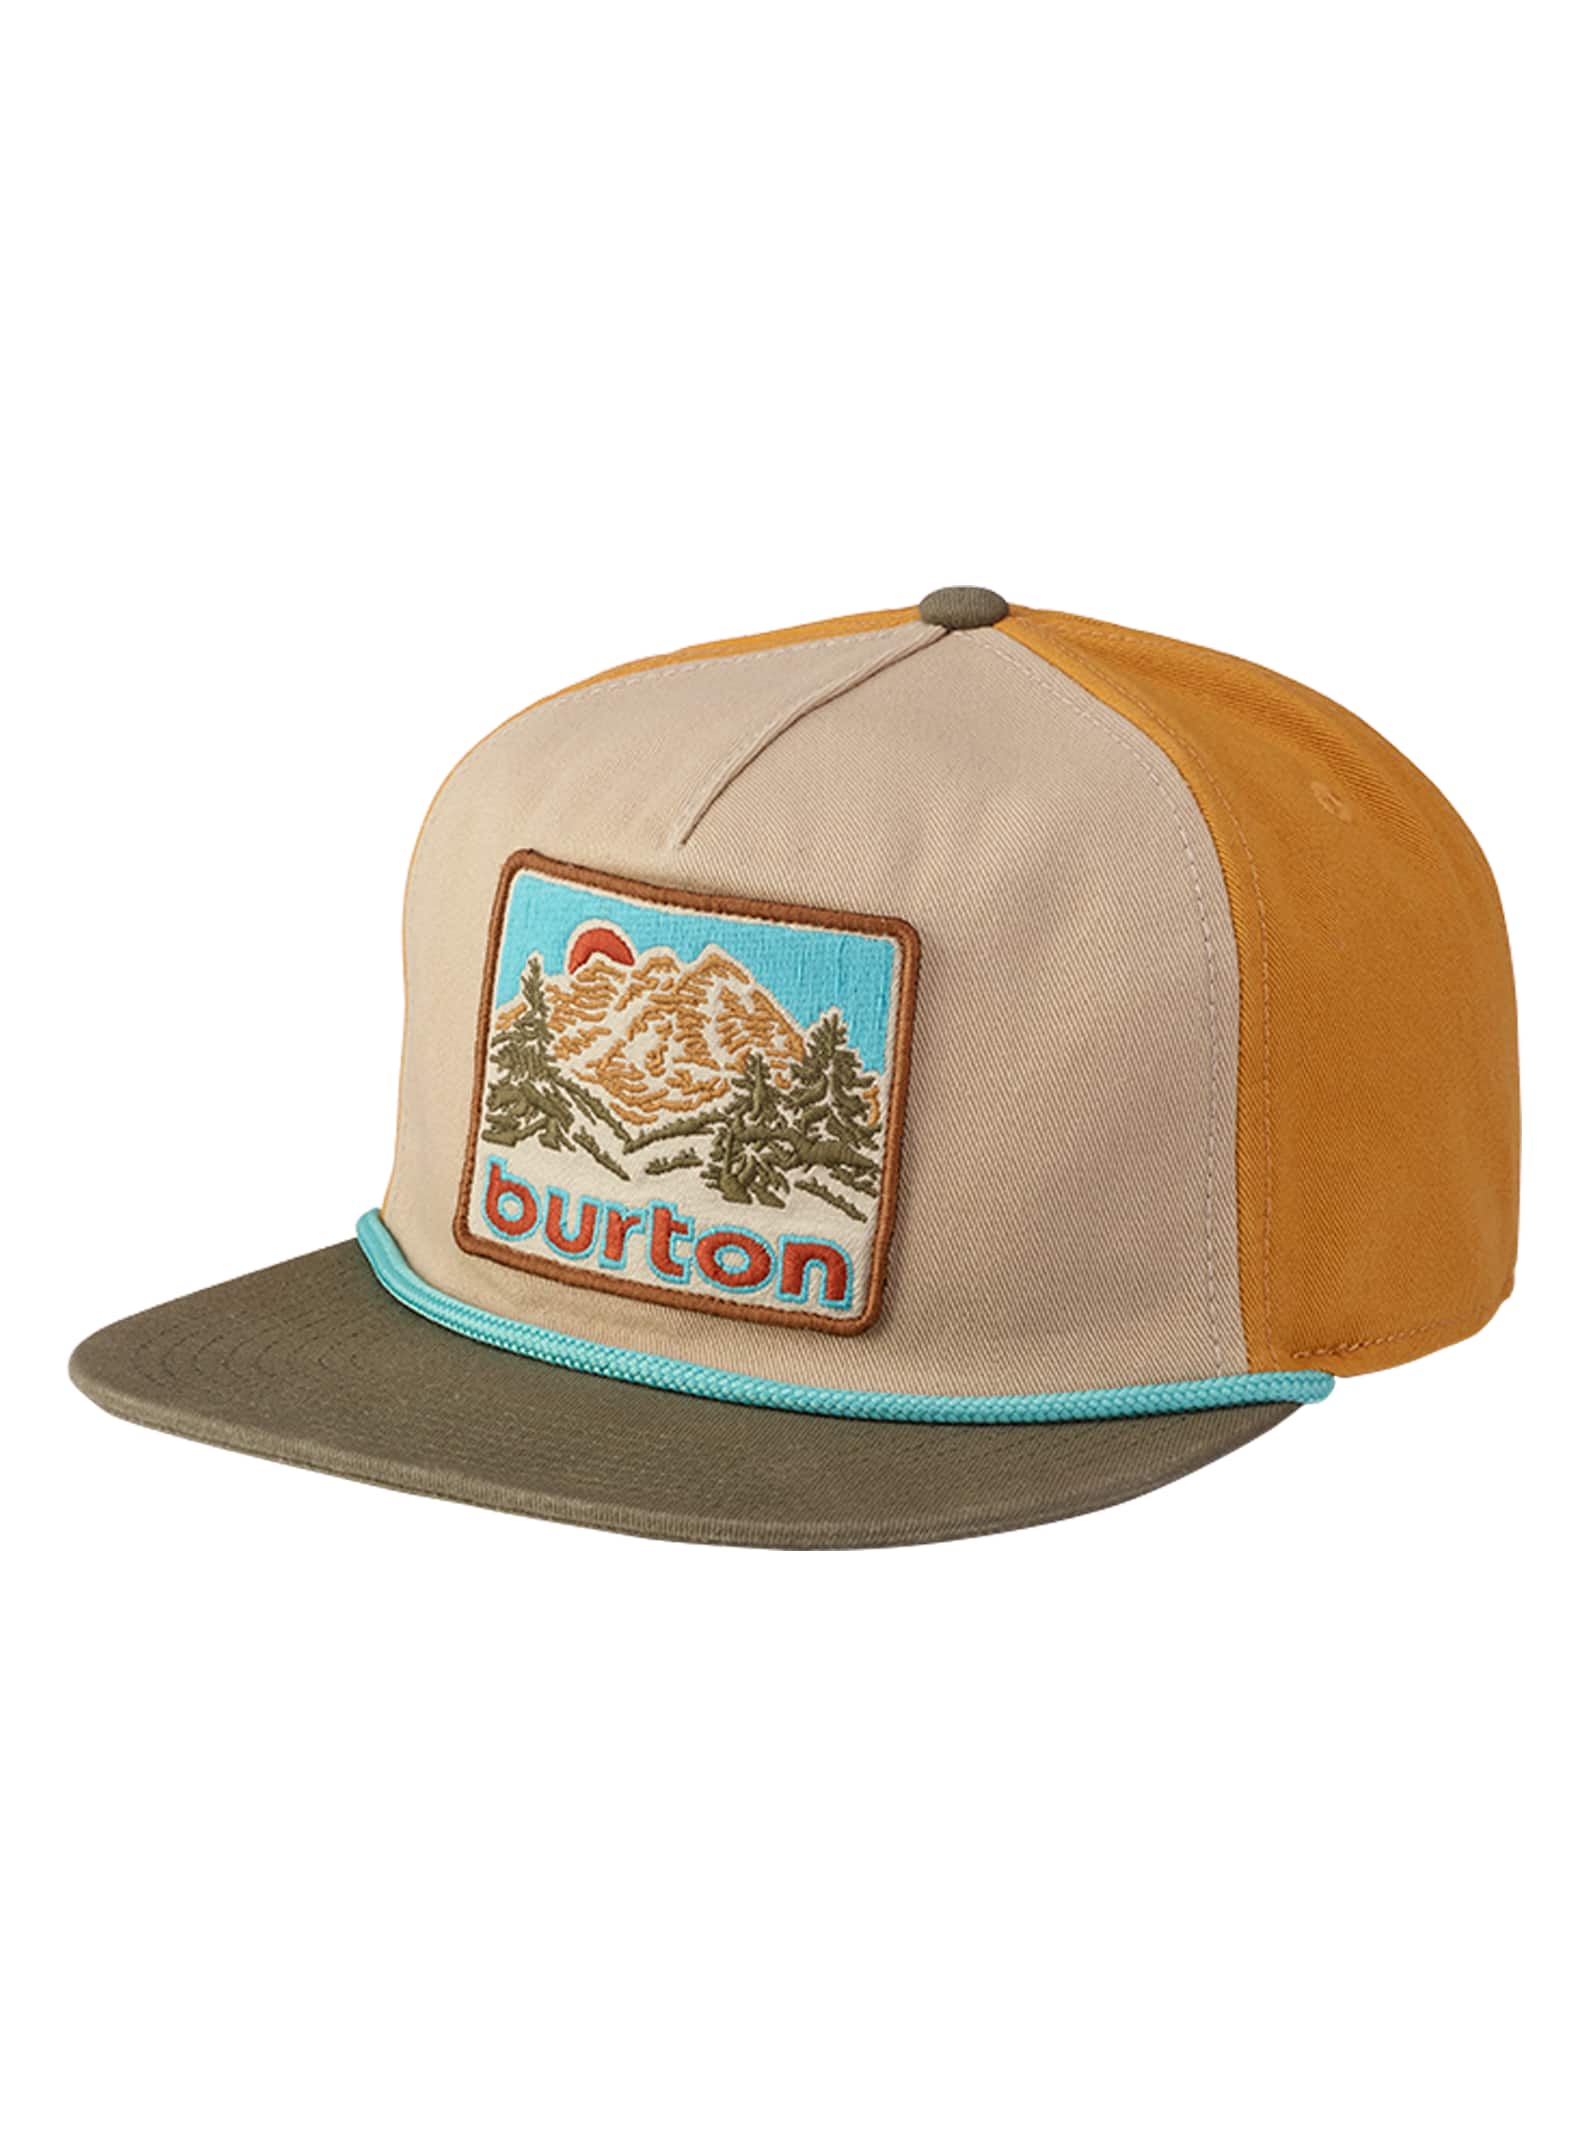 Burton Buckweed Snapback Hat | Burton.com Winter 2020 CA